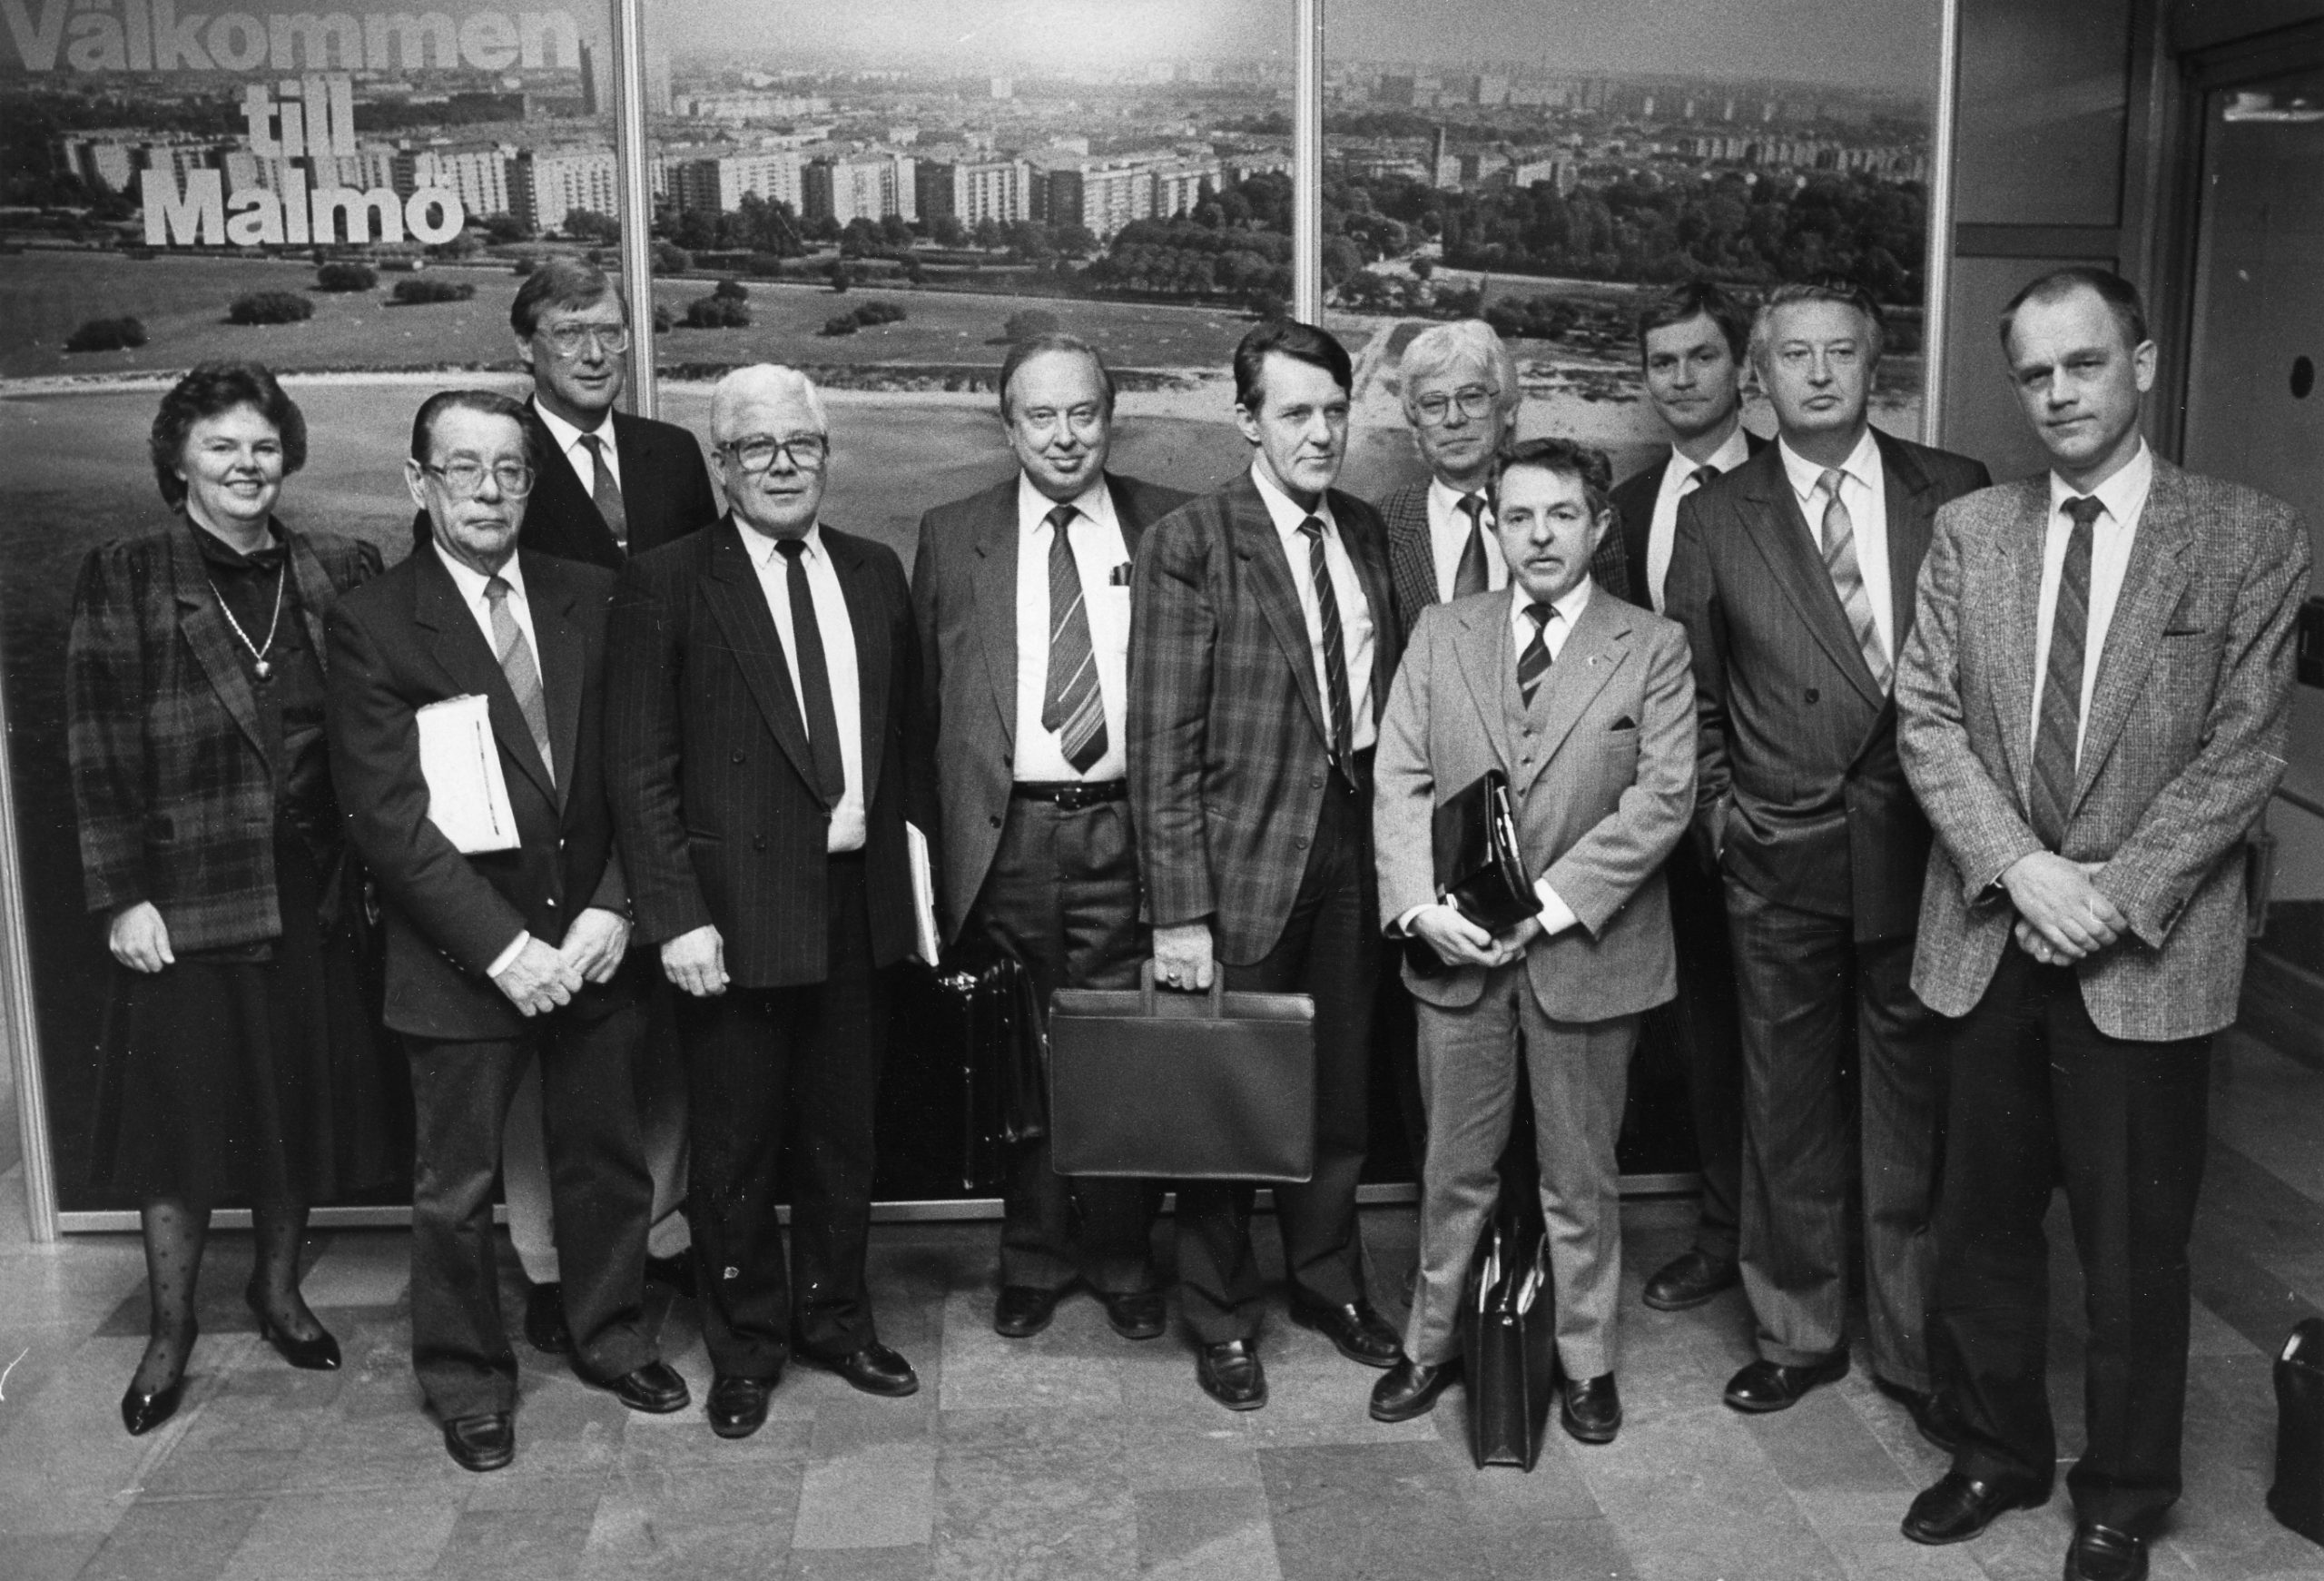 1987 års kommunalekonomiska mässa i Malmö lockade många deltagare, som PTK:s Bertil Blomqvuist (näst längst till höger) och löneminister Bengt KÅ Johansson (längst till höger). Foto: Göran Strandberg.